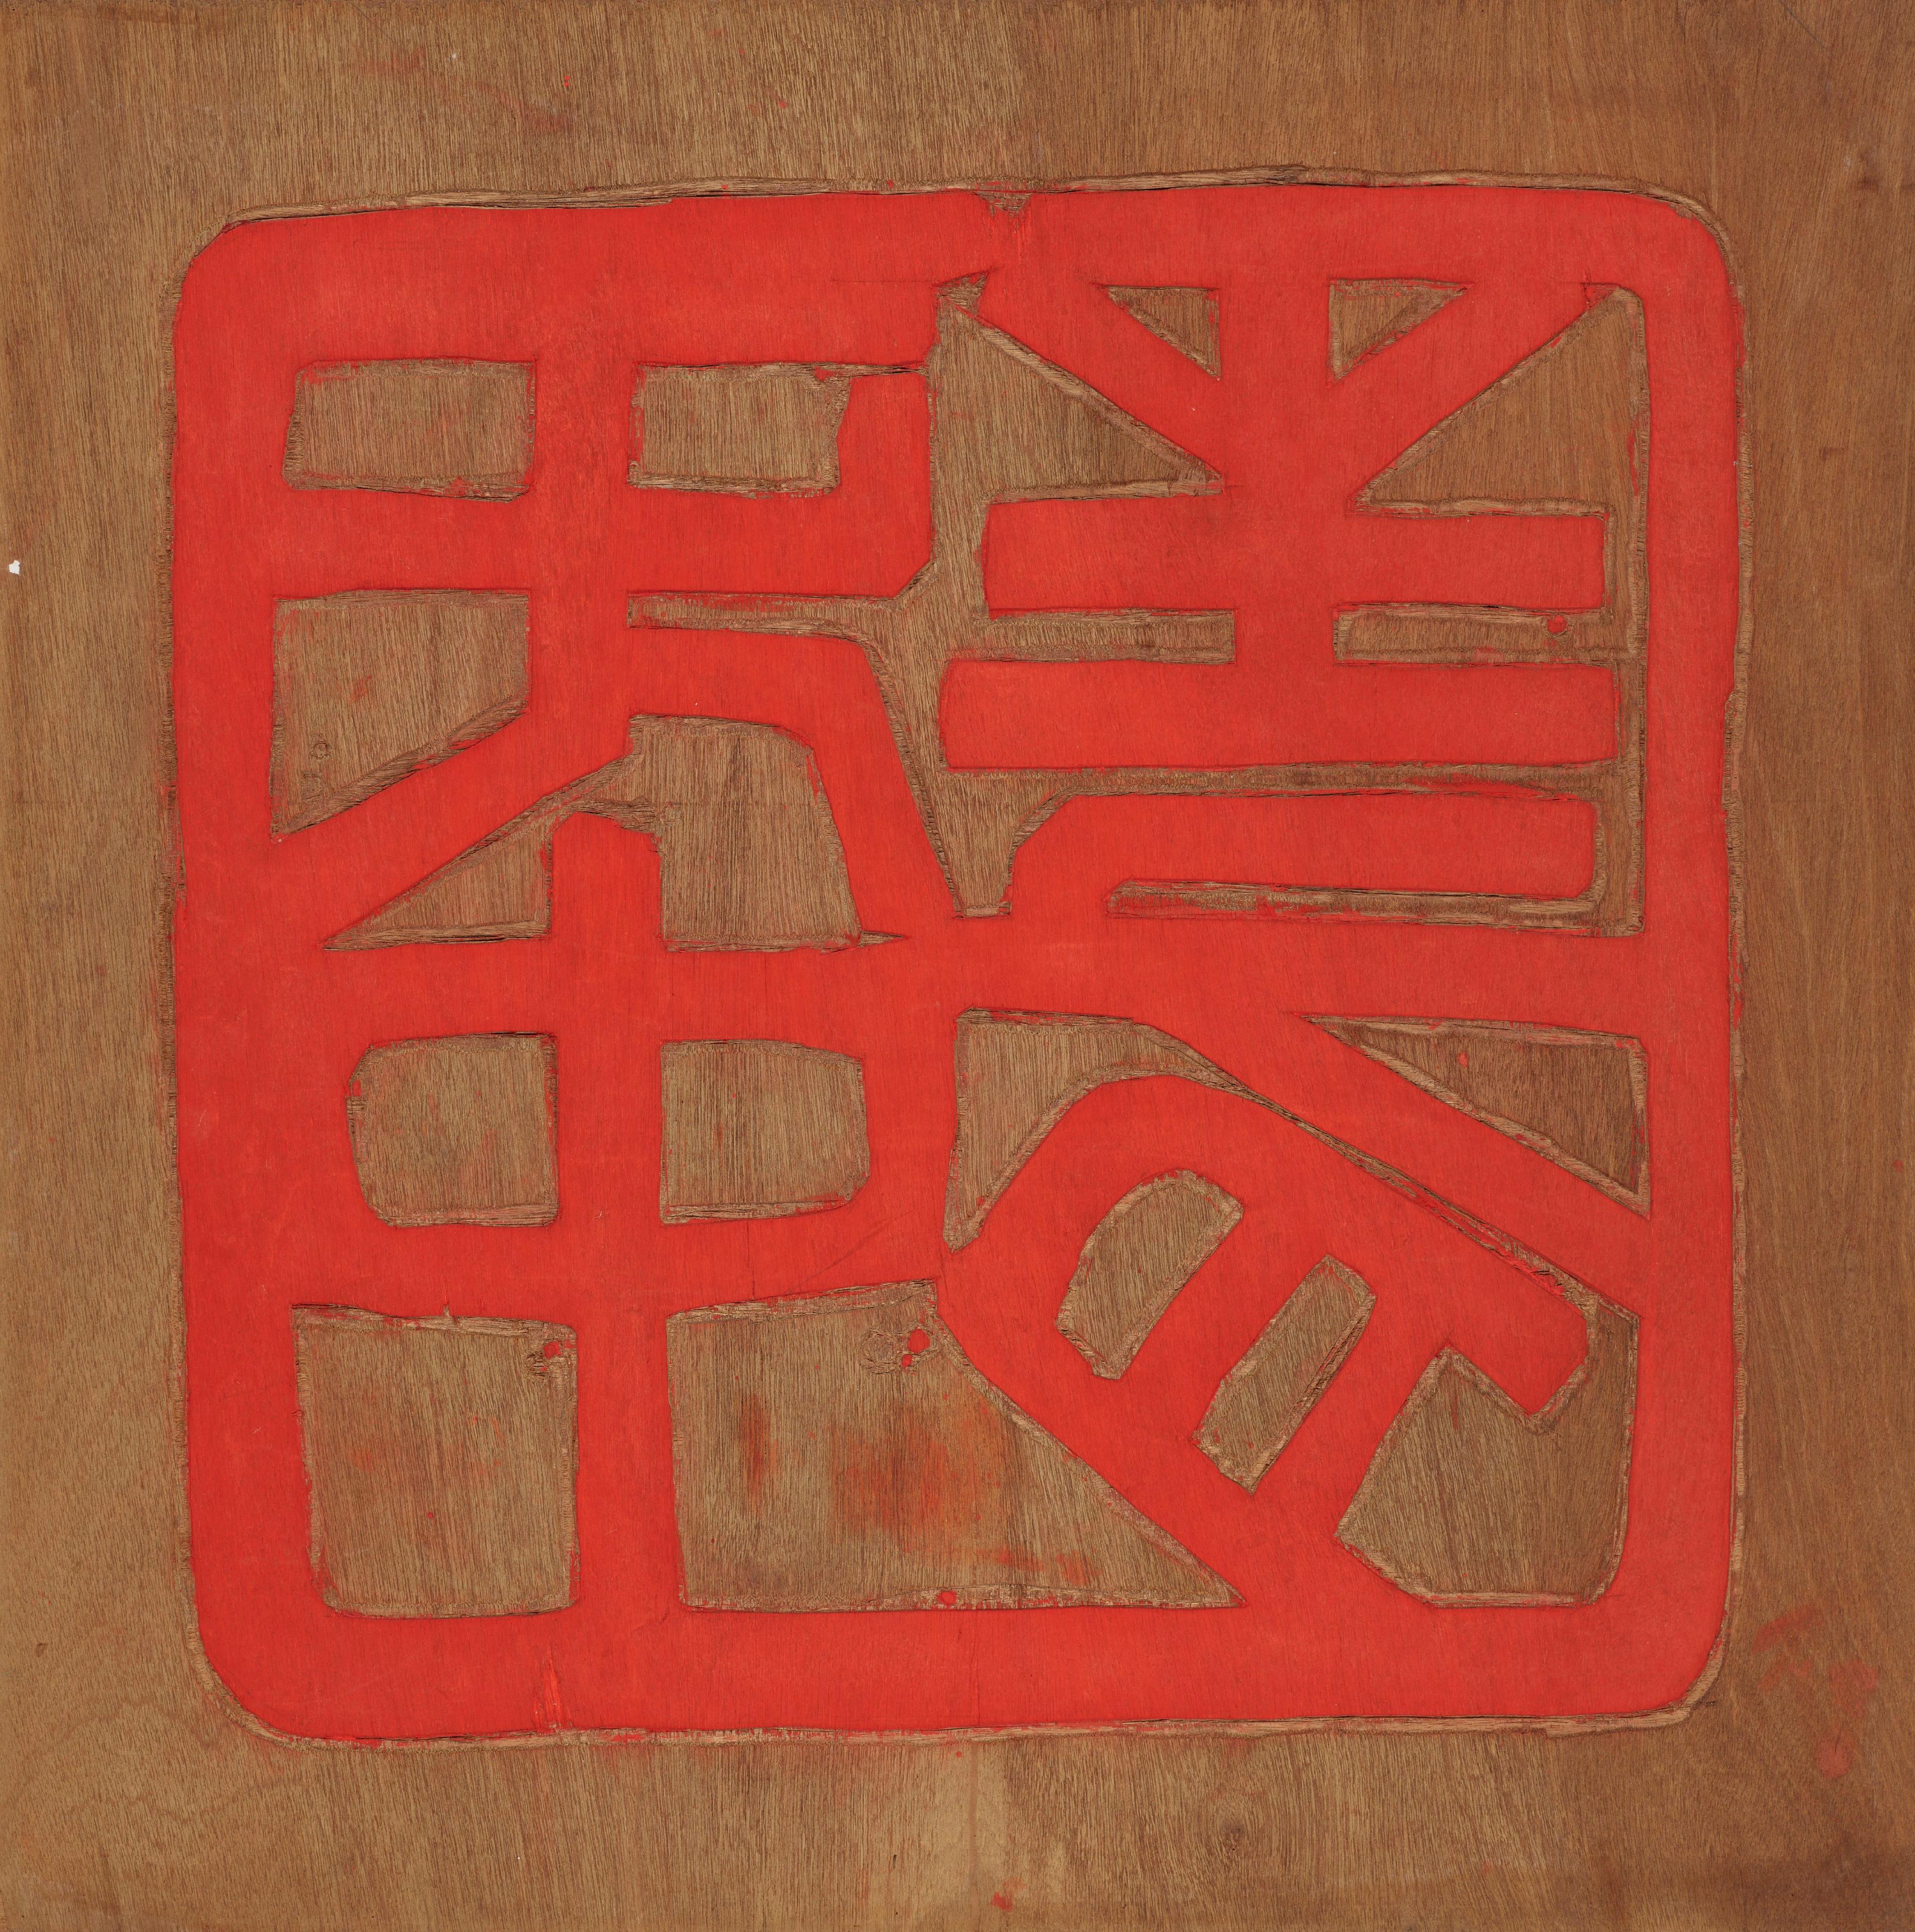 香港藝術館獲唐景森夫人趙慧儀慷慨捐贈37件藏品，包括兩位已故香港著名藝術家唐景森和張義的作品。圖示唐景森印章版畫作品《無中生有》。

